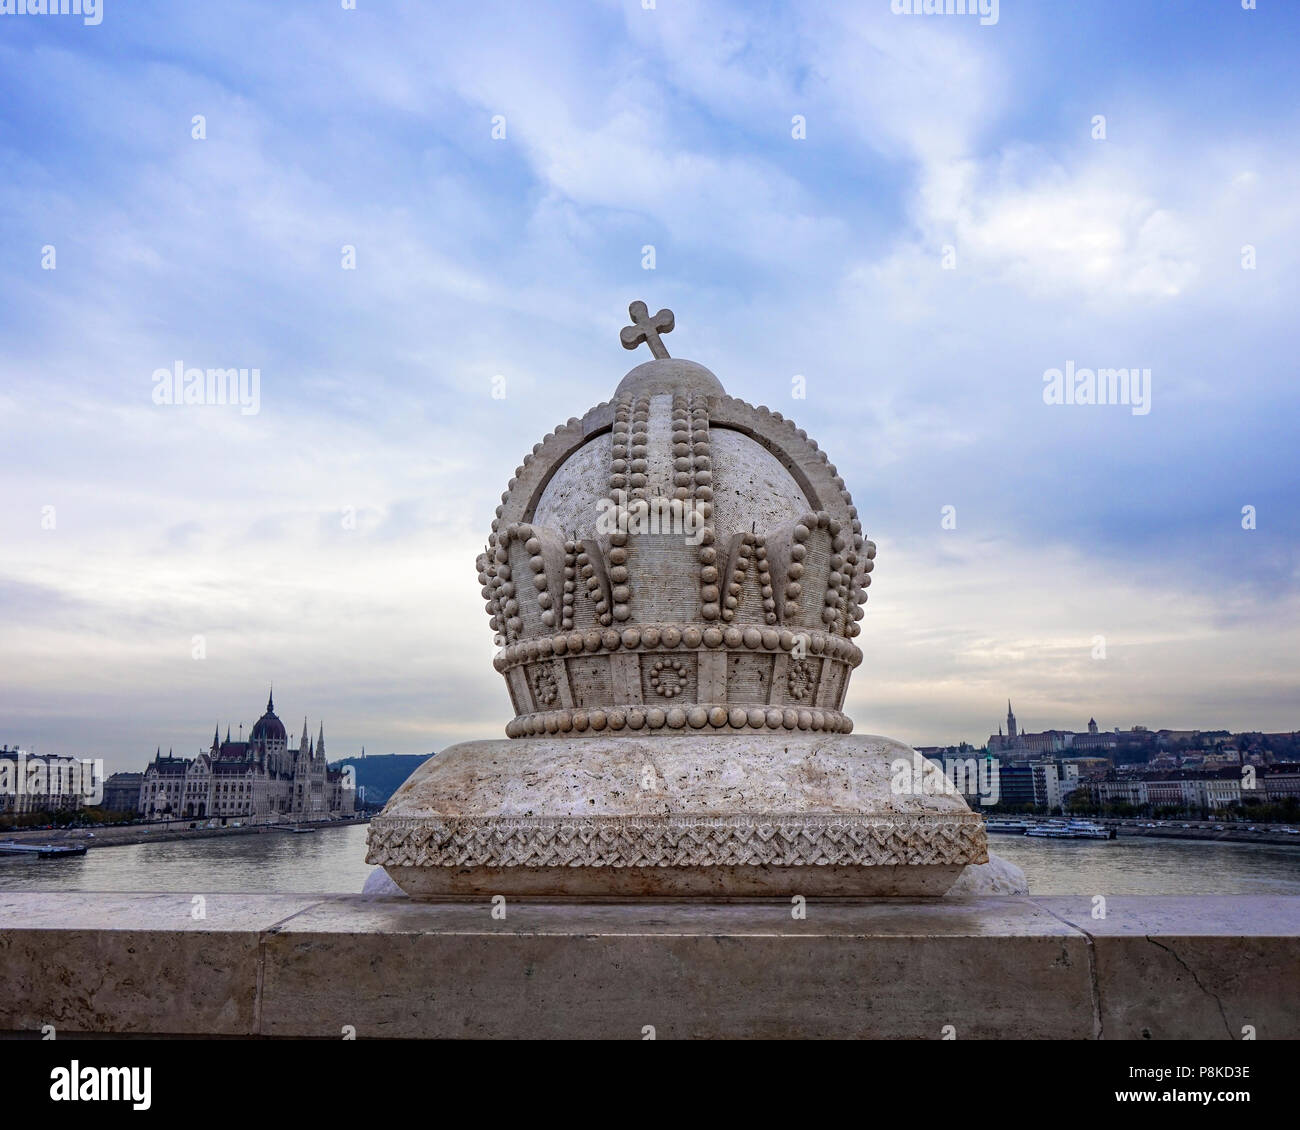 La corona ungherese statua sul ponte Margit con cielo blu e il Parlamento in background Foto Stock